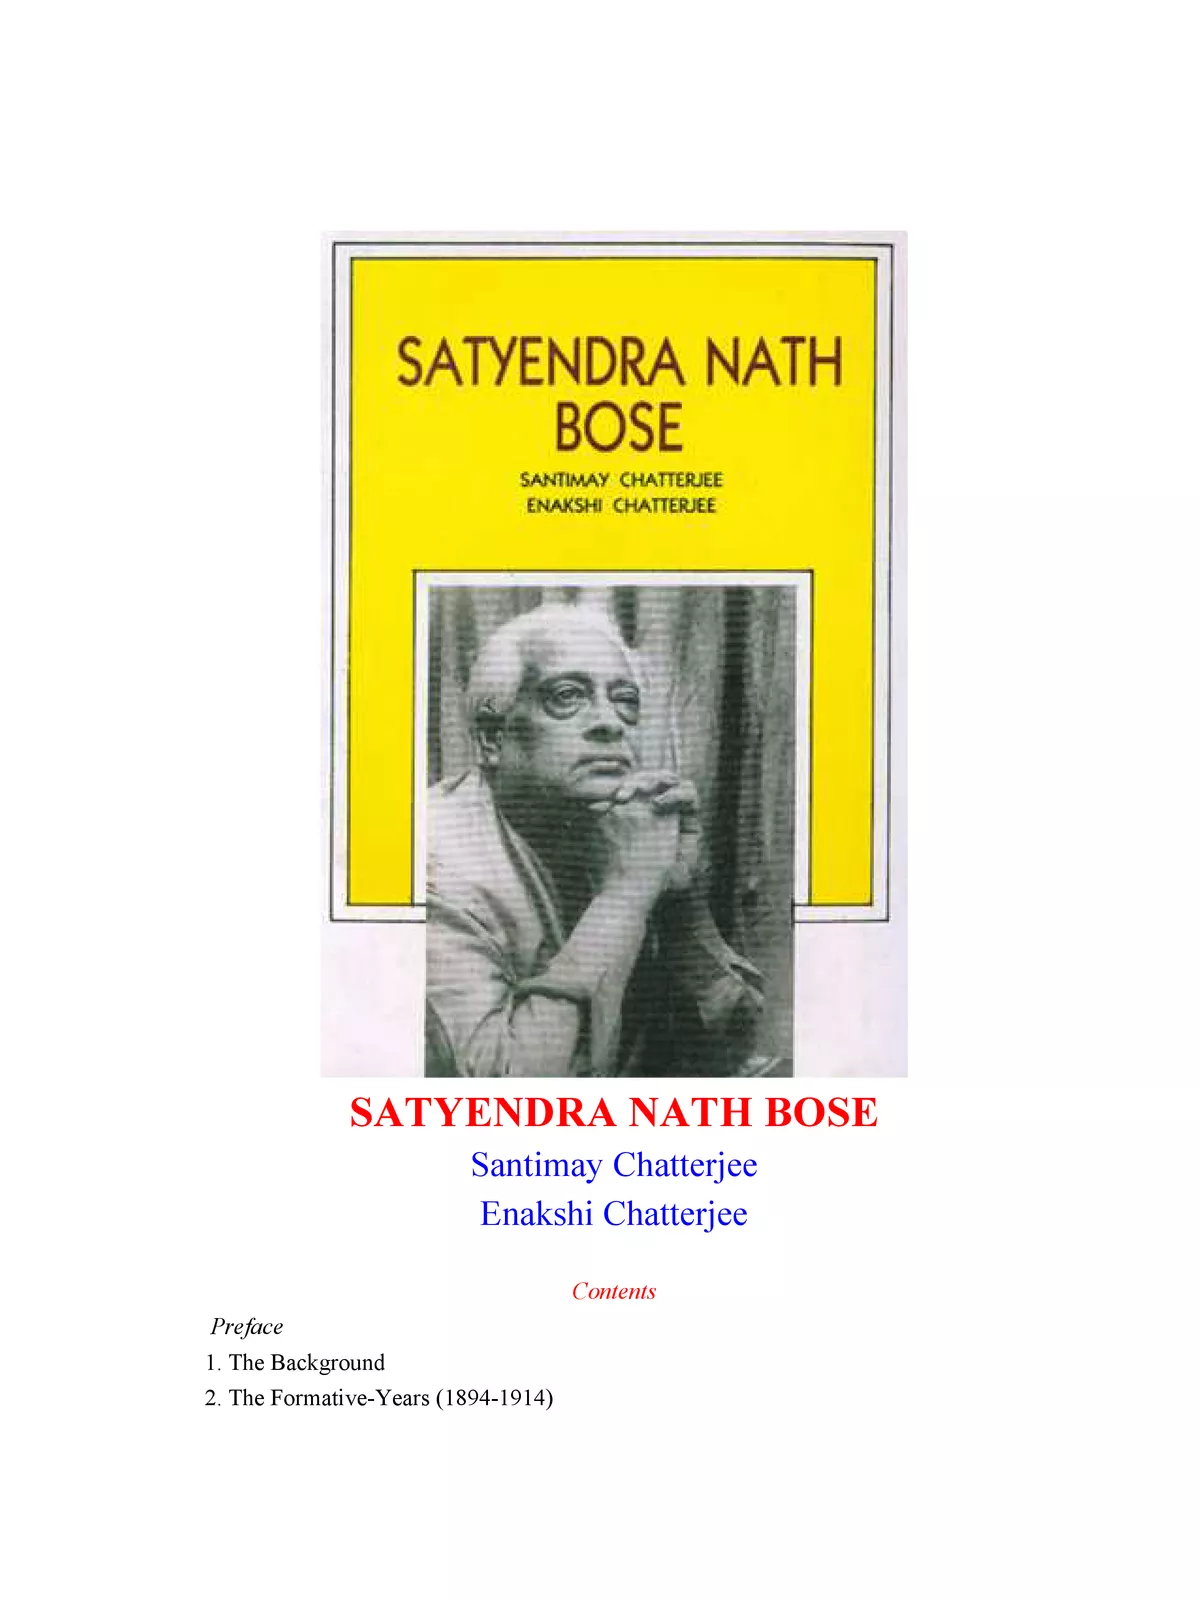 Satyendra Nath Bose Contribution to Mathematics